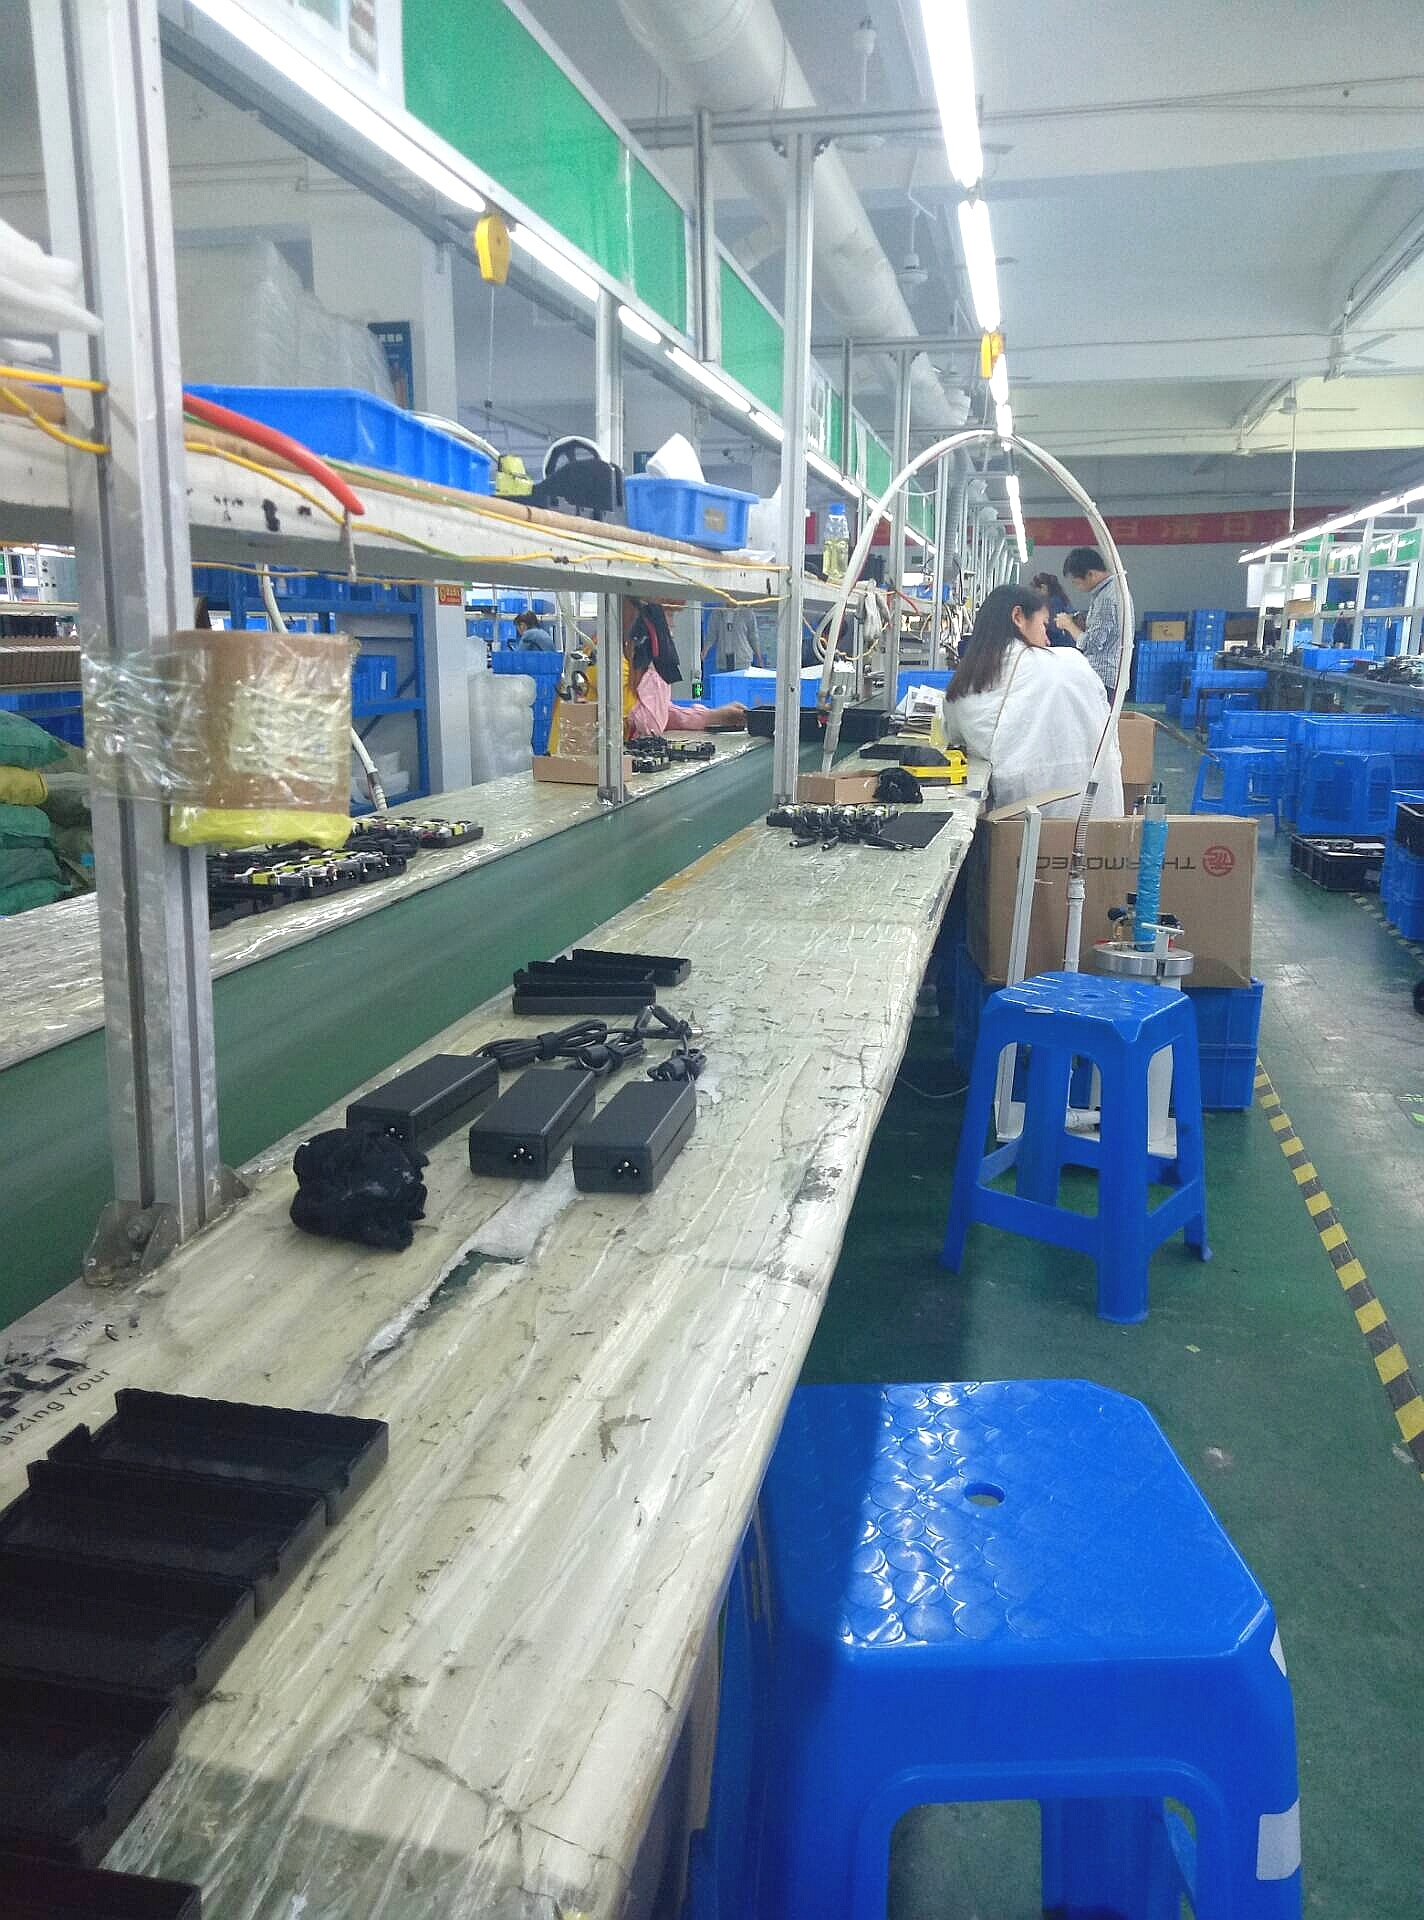 深圳某电子厂流水线上的他们,每天都是这样上班的,你体验过吗?